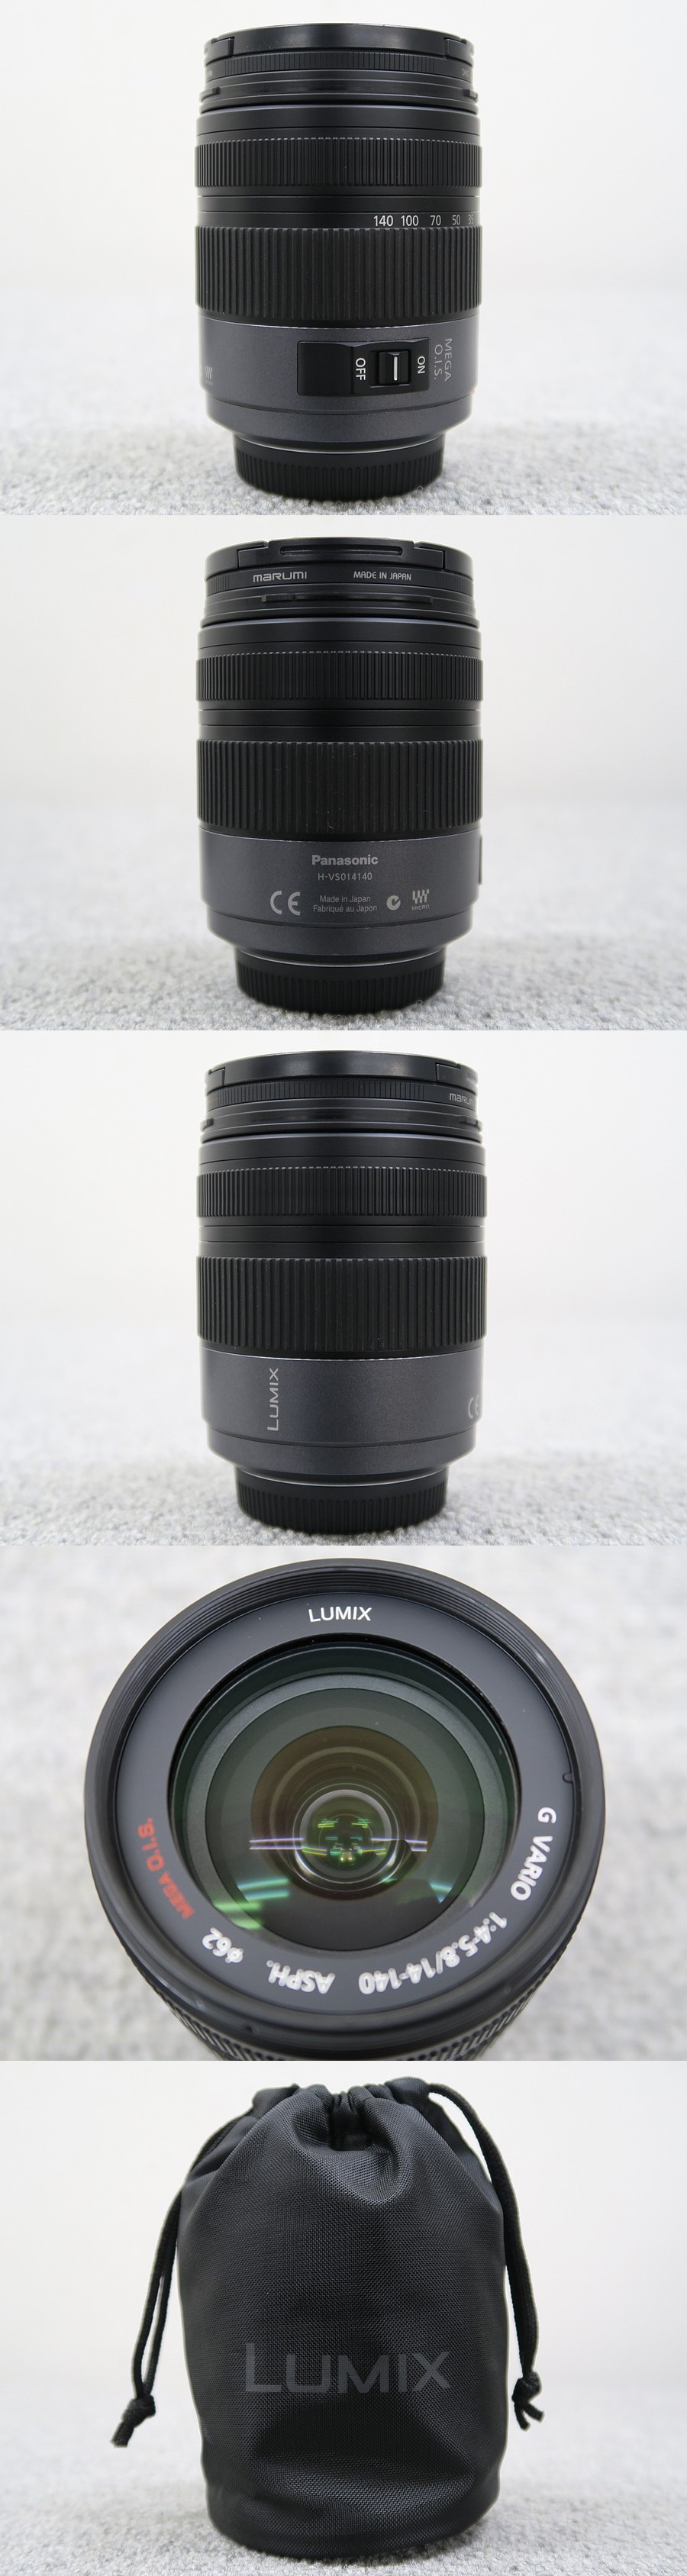 Panasonic LUMIX G VARIO HD 14-140mm/F4.0-5.8 ASPH カメラレンズ @44819 / 中古